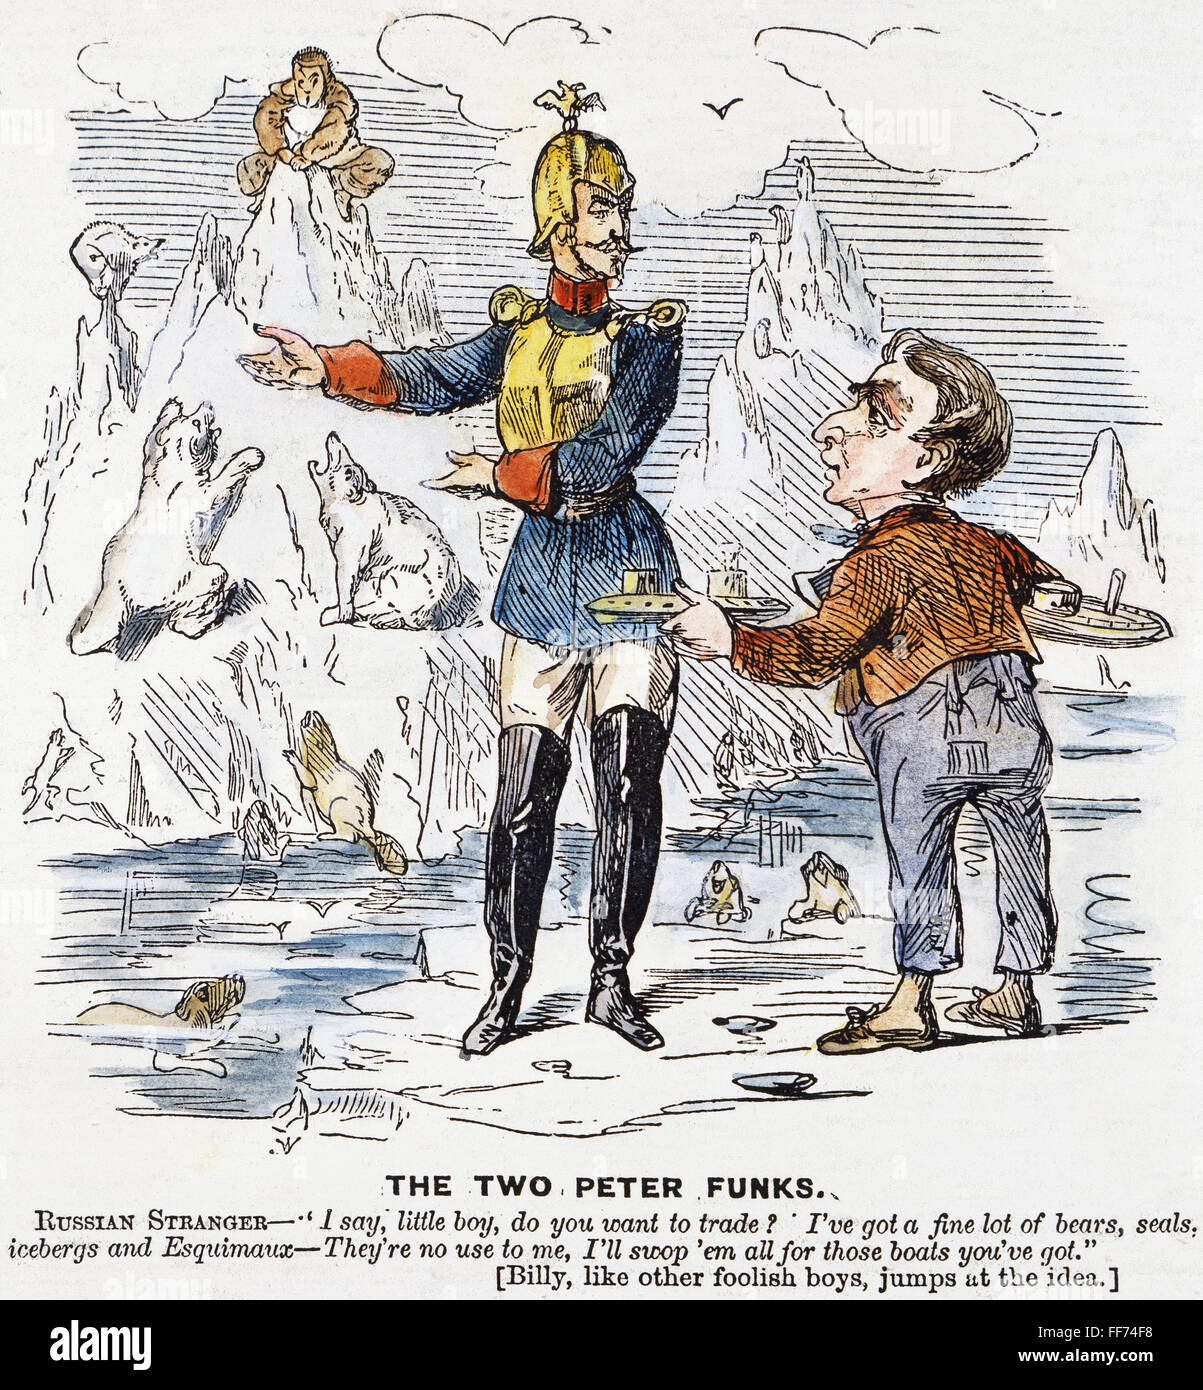 ALASKA ERWERB CARTOON. /nAn amerikanische Karikatur von 1867 verspotten Staatssekretär William H. Seward über den Alaska-Kauf ein schlechtes Geschäft gemacht zu haben. Stockfoto